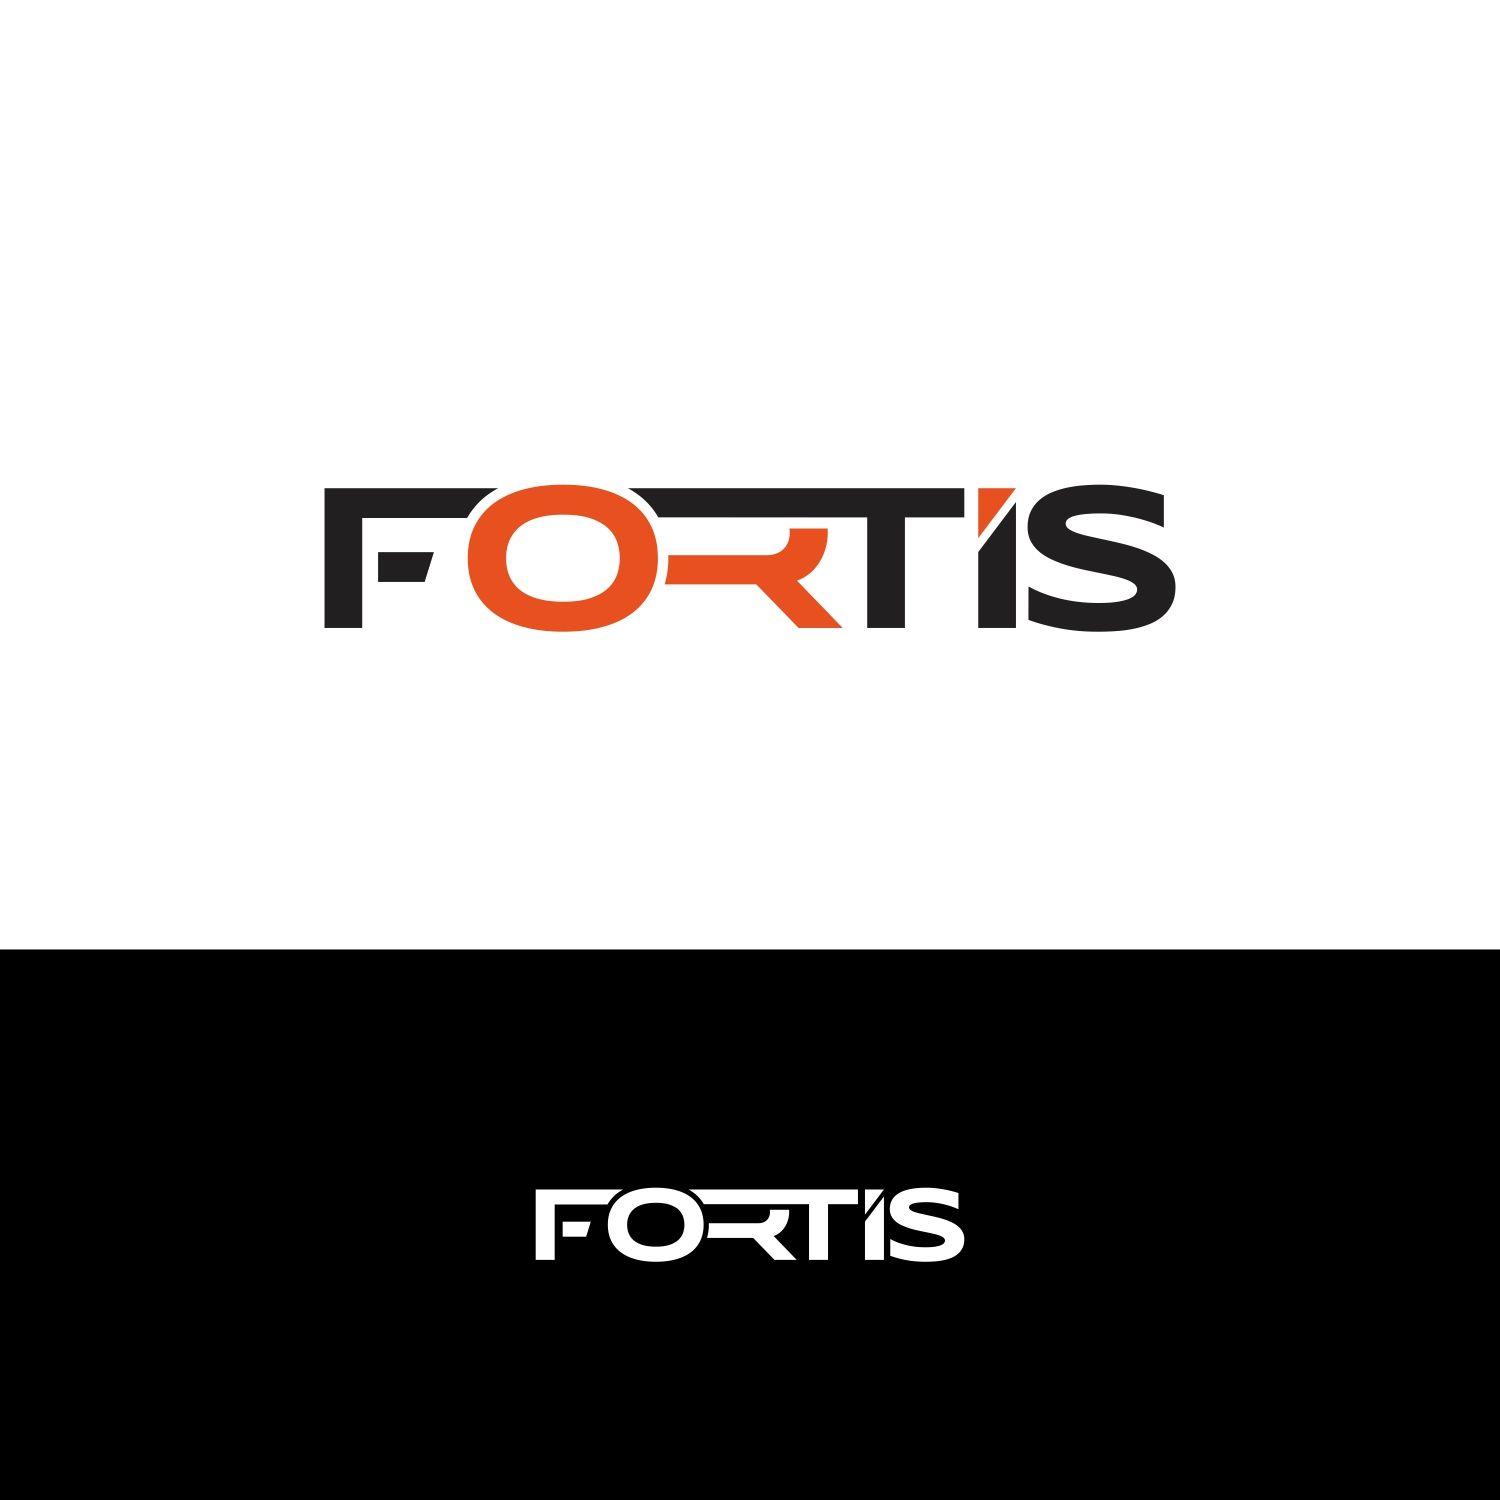 Fortis Logo - Masculine, Conservative Logo Design for Fortis by G Visions. Design